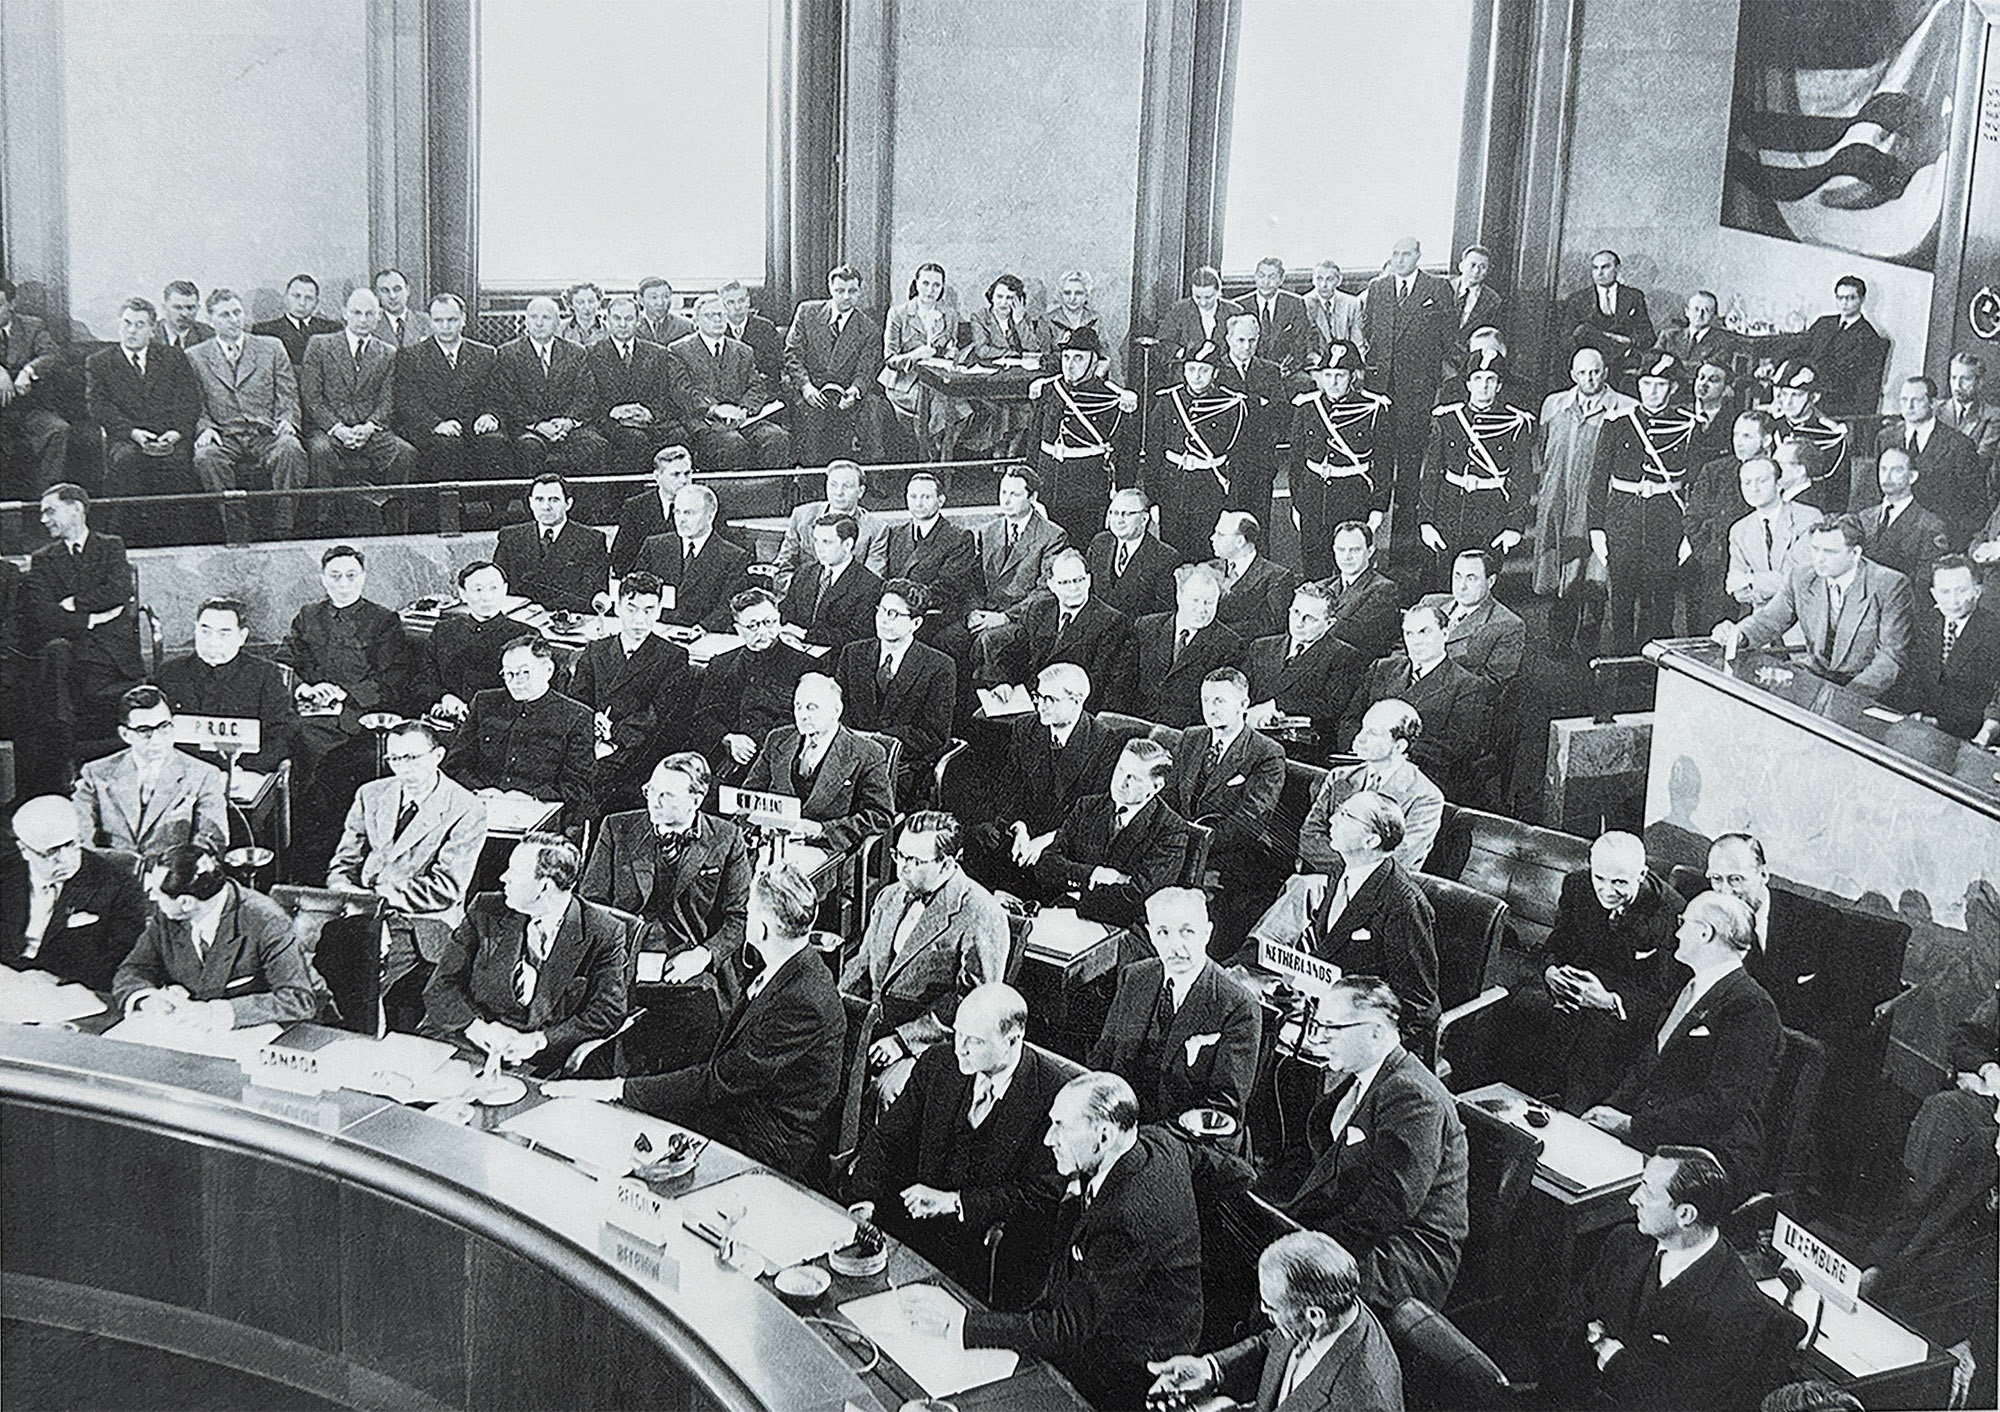 Ảnh tư liệu quý ít được biết về Hội nghị Geneve 1954 - 12